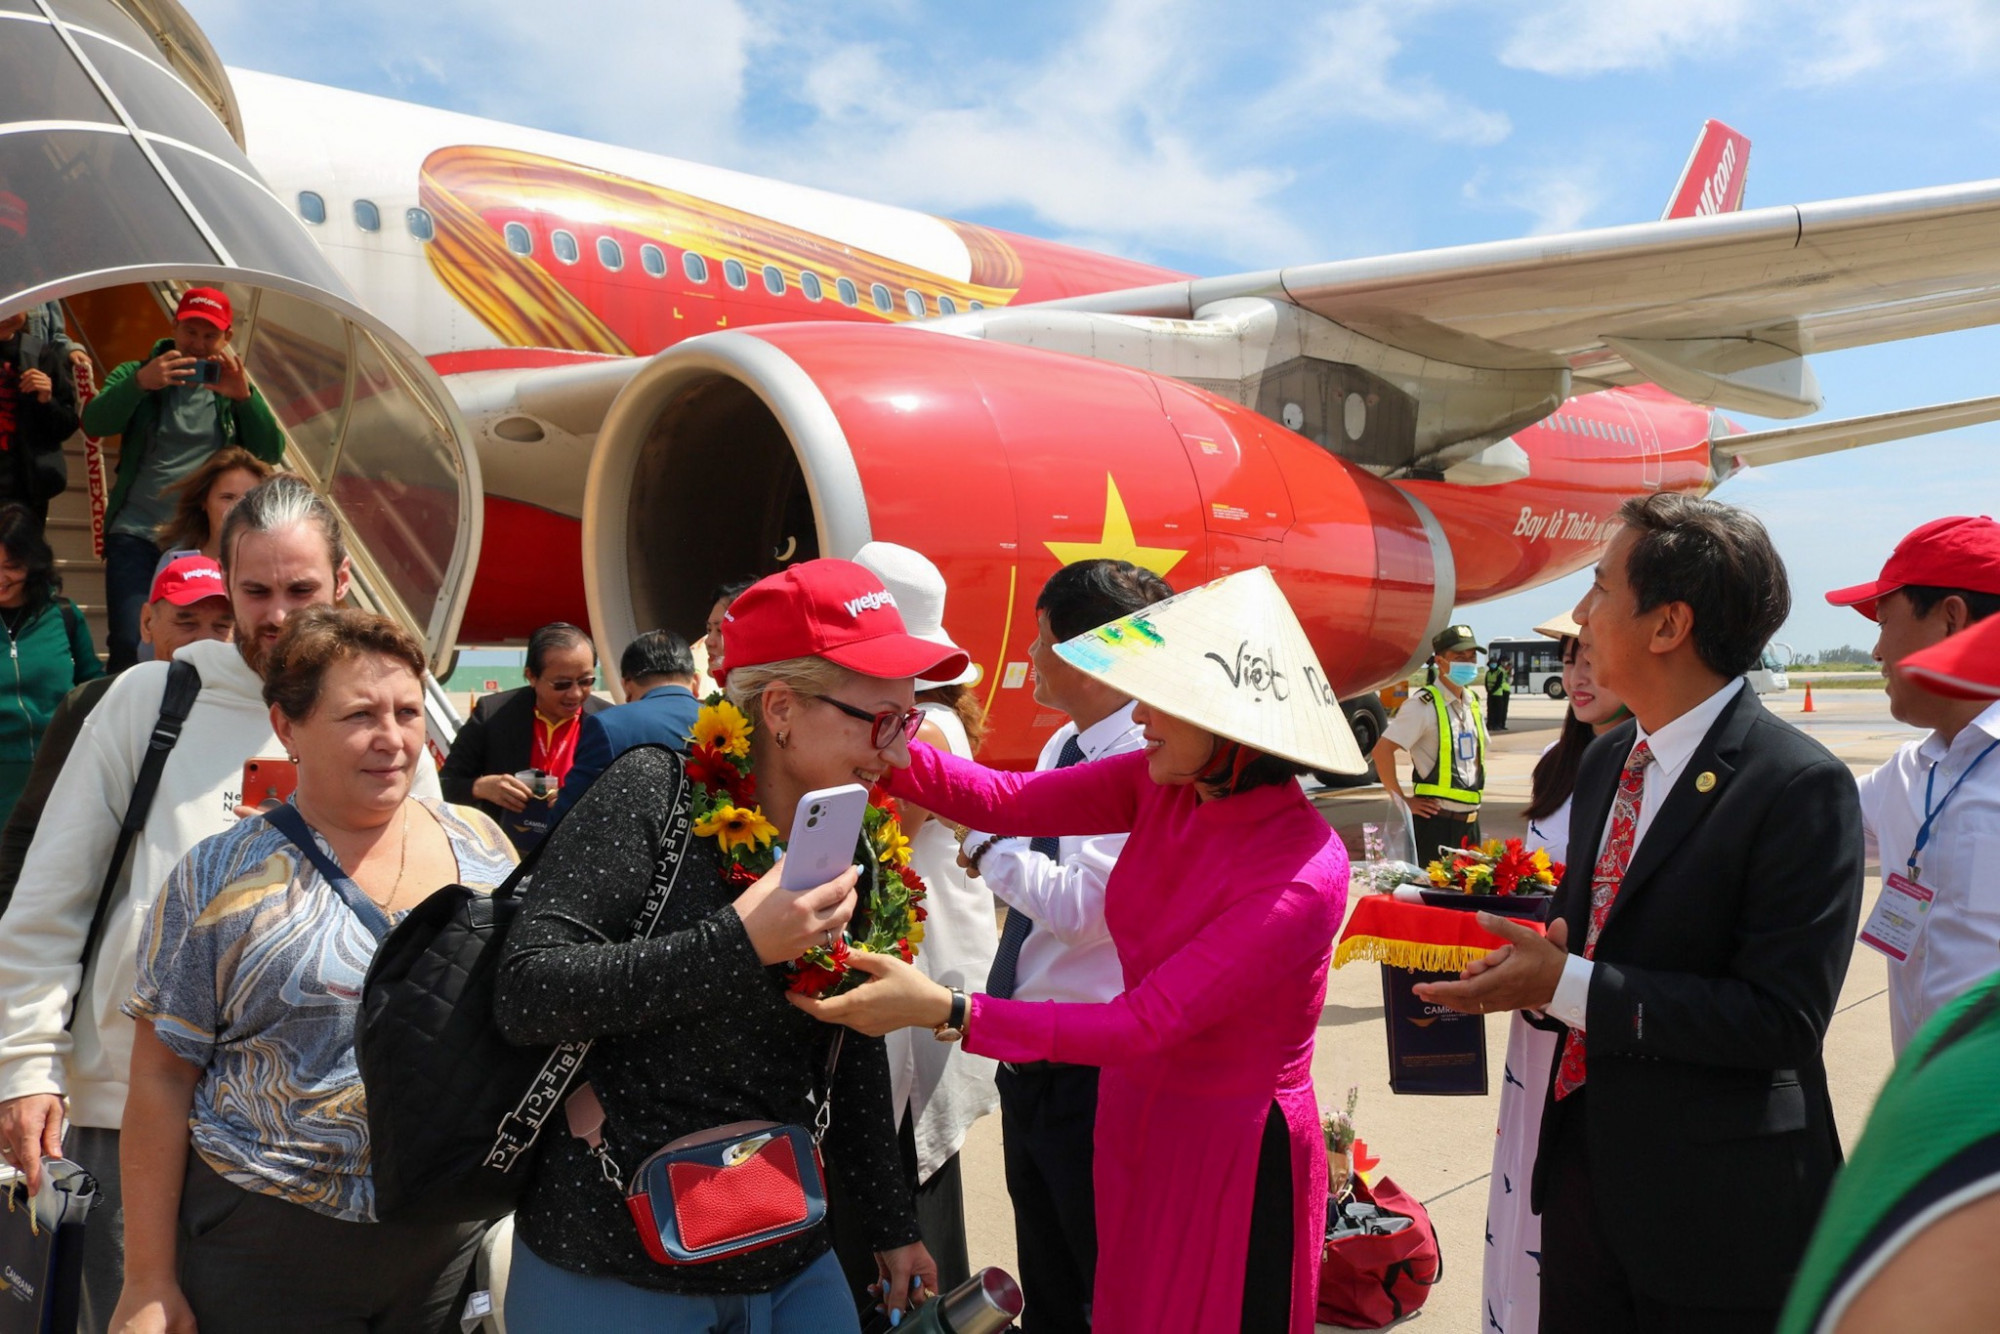 Chuyến bay mang theo 376 khách quốc tế, trong đó 90% là khách Kazakhstan đến Nha Trang - Khánh Hòa tham quan, nghỉ dưỡng